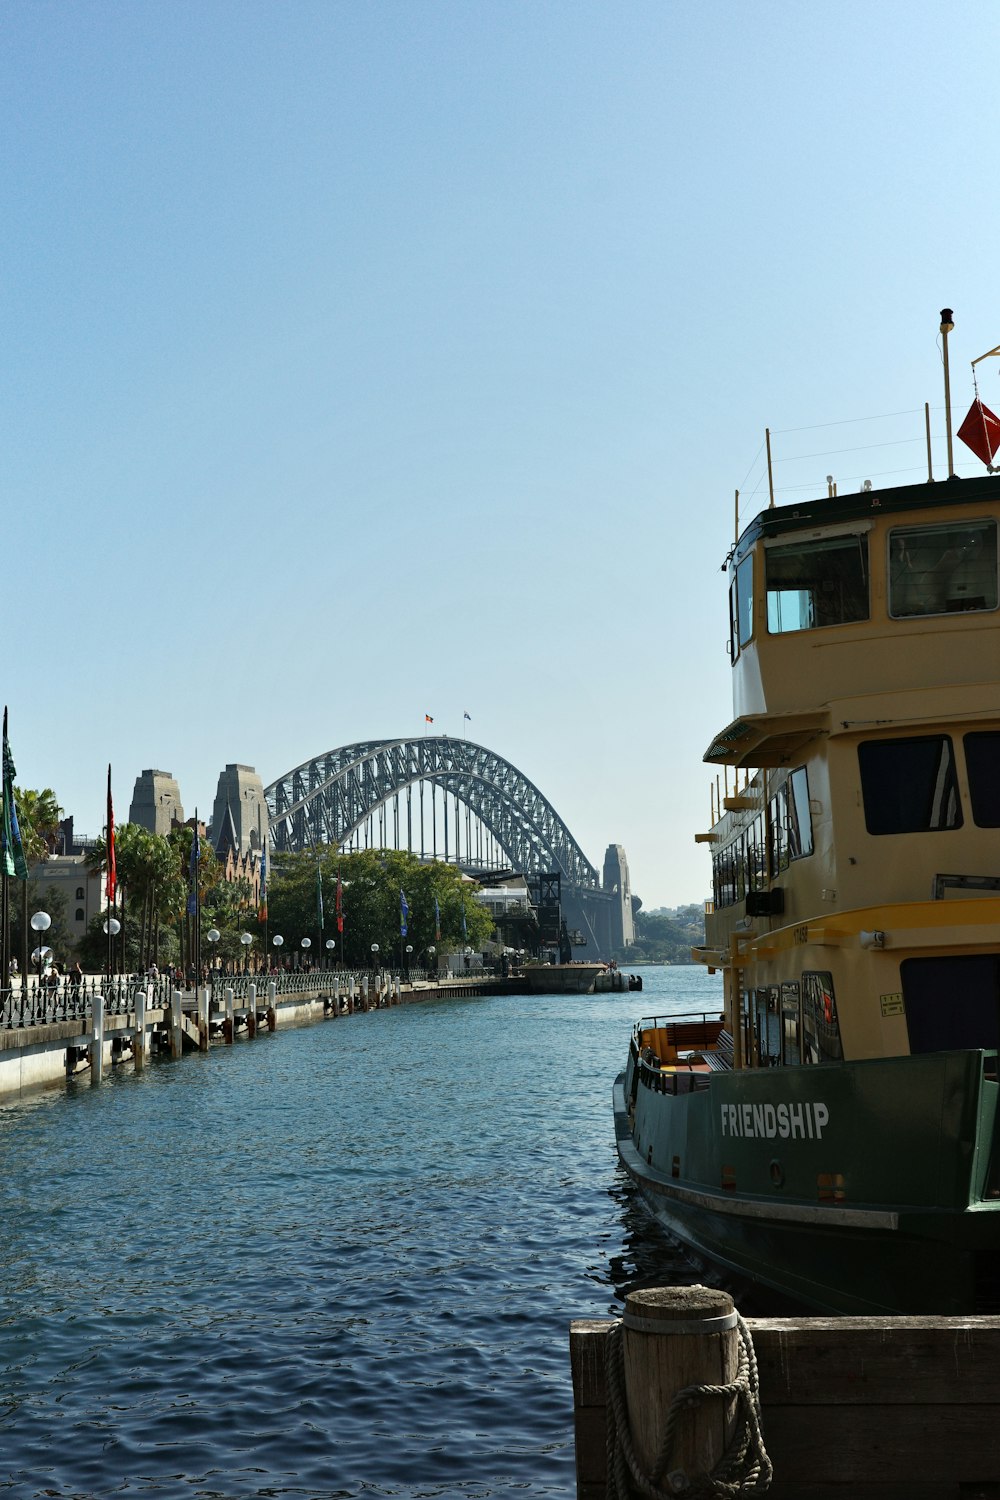 a boat is docked in the water near a bridge